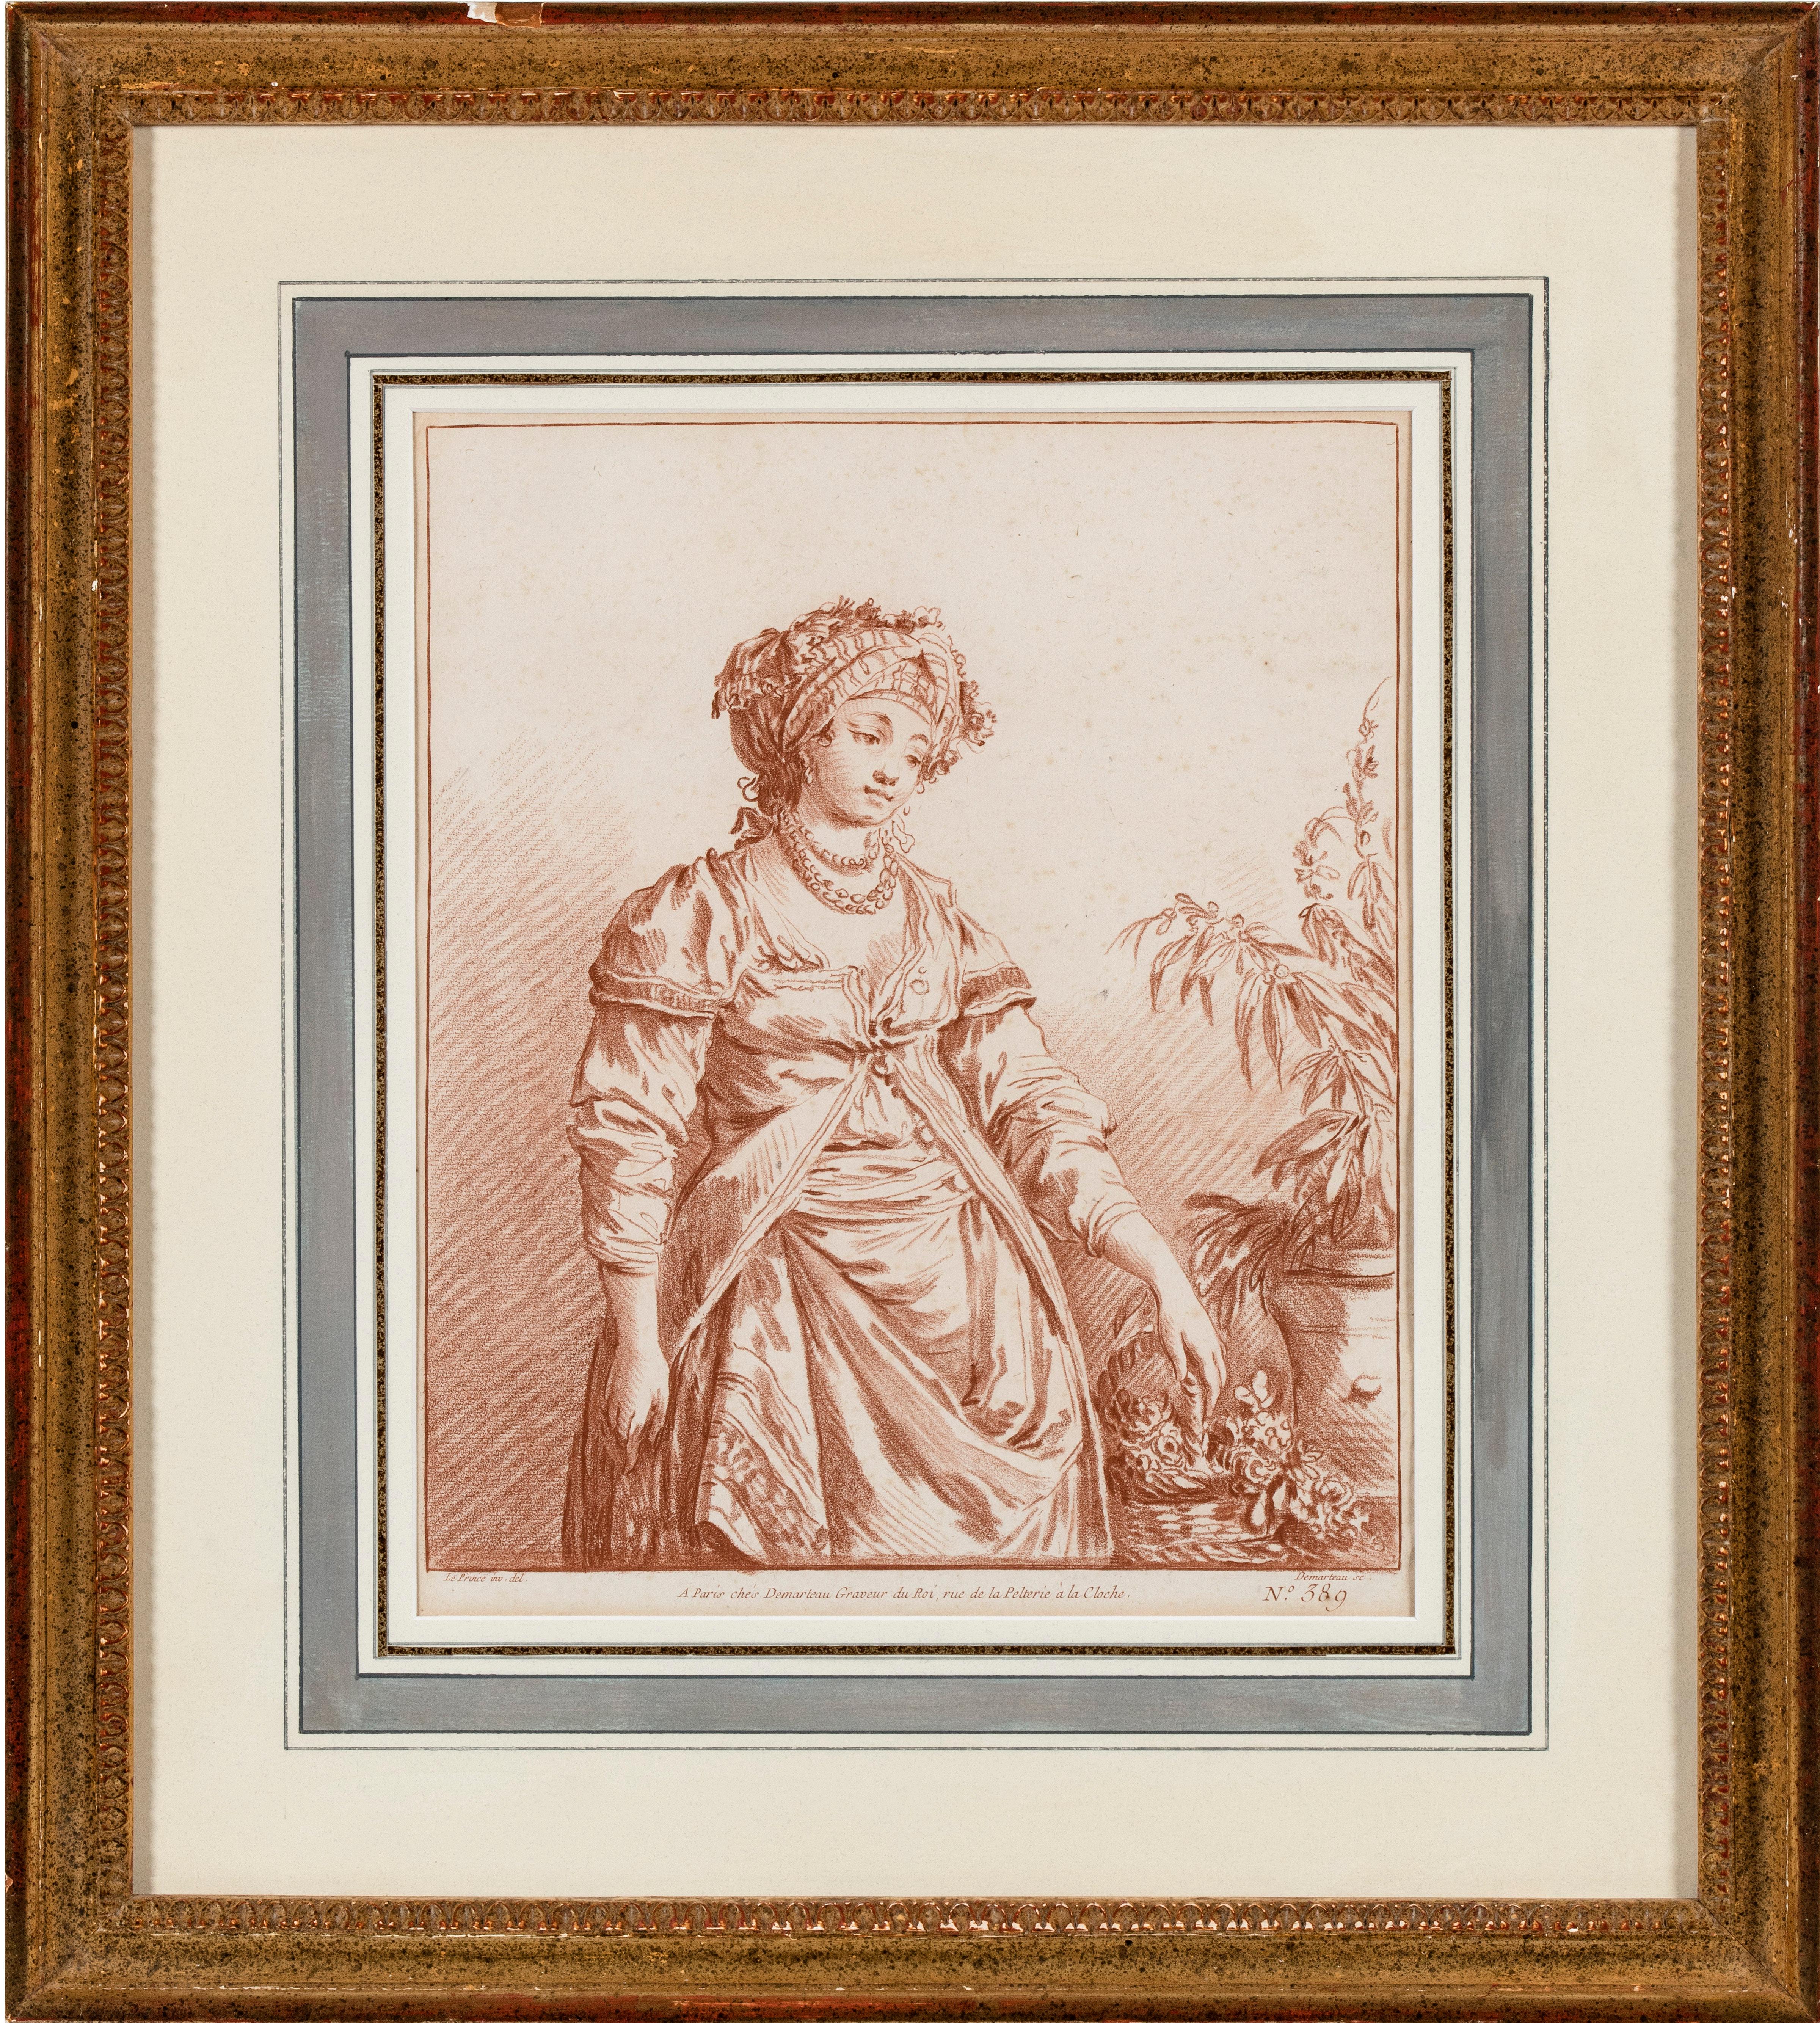 Das Paar besteht aus dem vorliegenden Werk und einem Stich von der Hand von Giles DeMarteau (Lüttich 1722 - 1776 Paris) mit dem Titel Frau im Fantasiekostüm, nach Jean Baptiste Le Prince, und den Maßen 10 ⅜ x 8 ⅝ Zoll (26,5 x 22 cm).

Die Gravur von